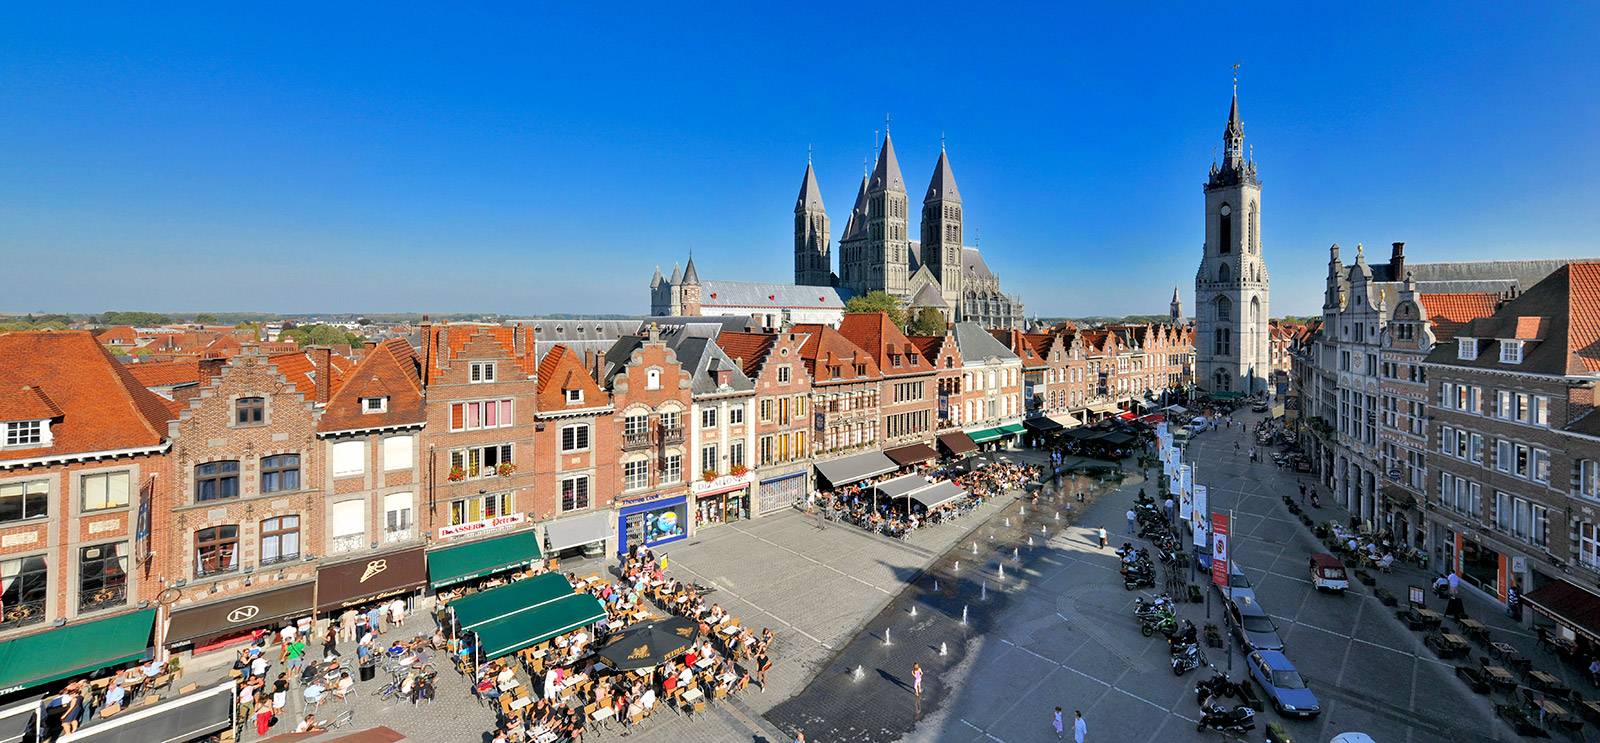 Gent – Belgium legpechesebb városa